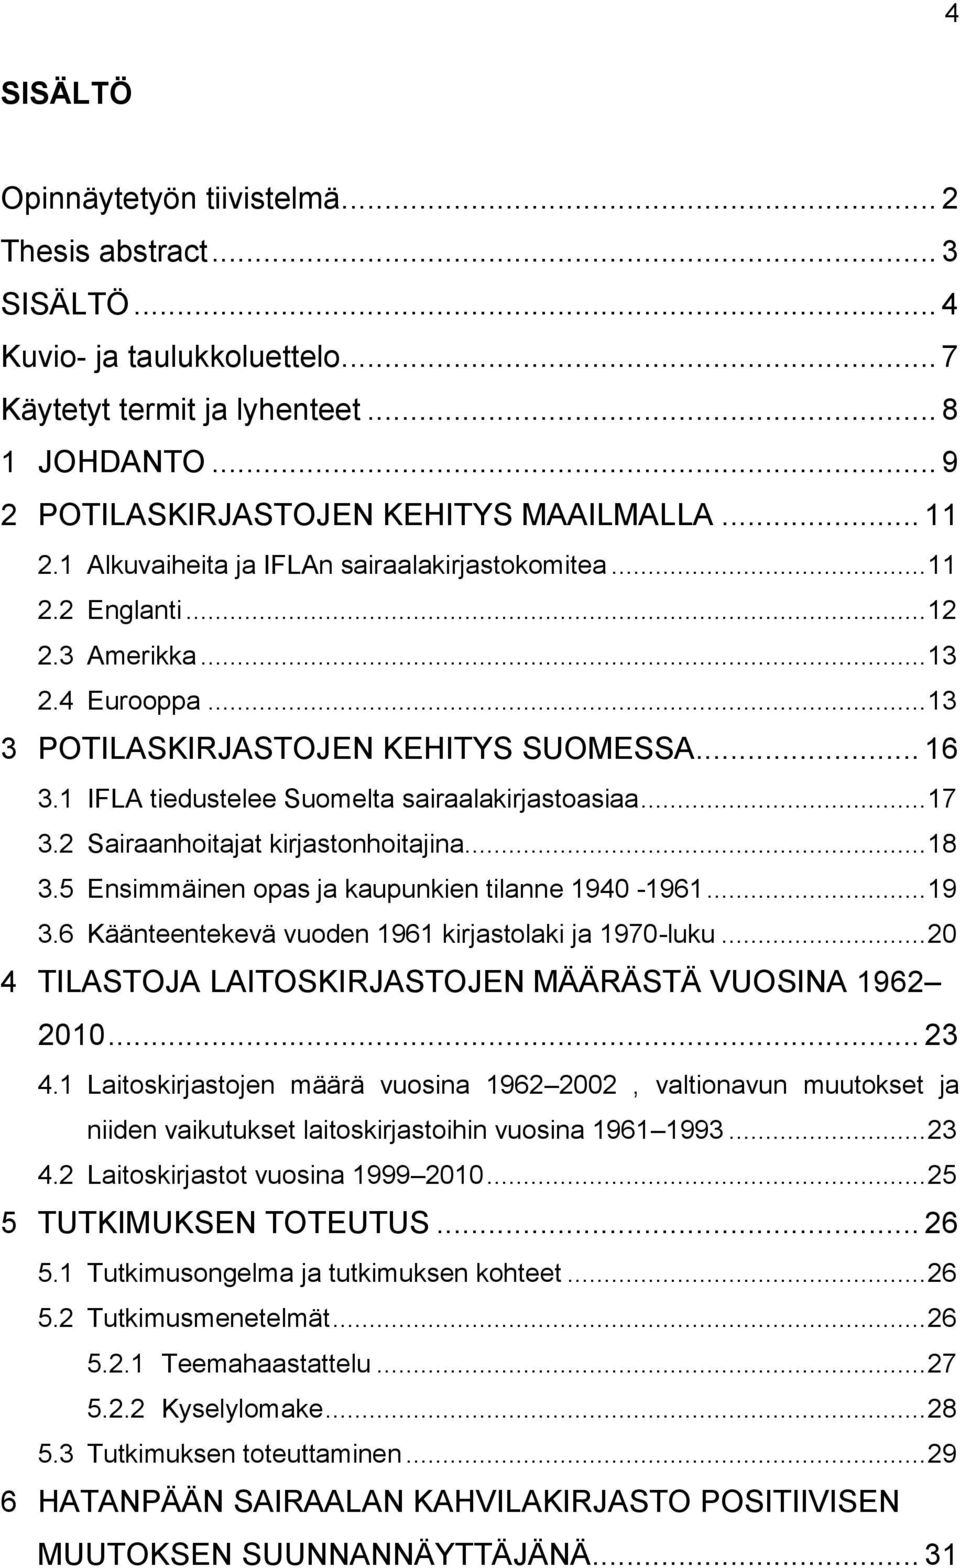 1 IFLA tiedustelee Suomelta sairaalakirjastoasiaa... 17 3.2 Sairaanhoitajat kirjastonhoitajina... 18 3.5 Ensimmäinen opas ja kaupunkien tilanne 1940-1961... 19 3.